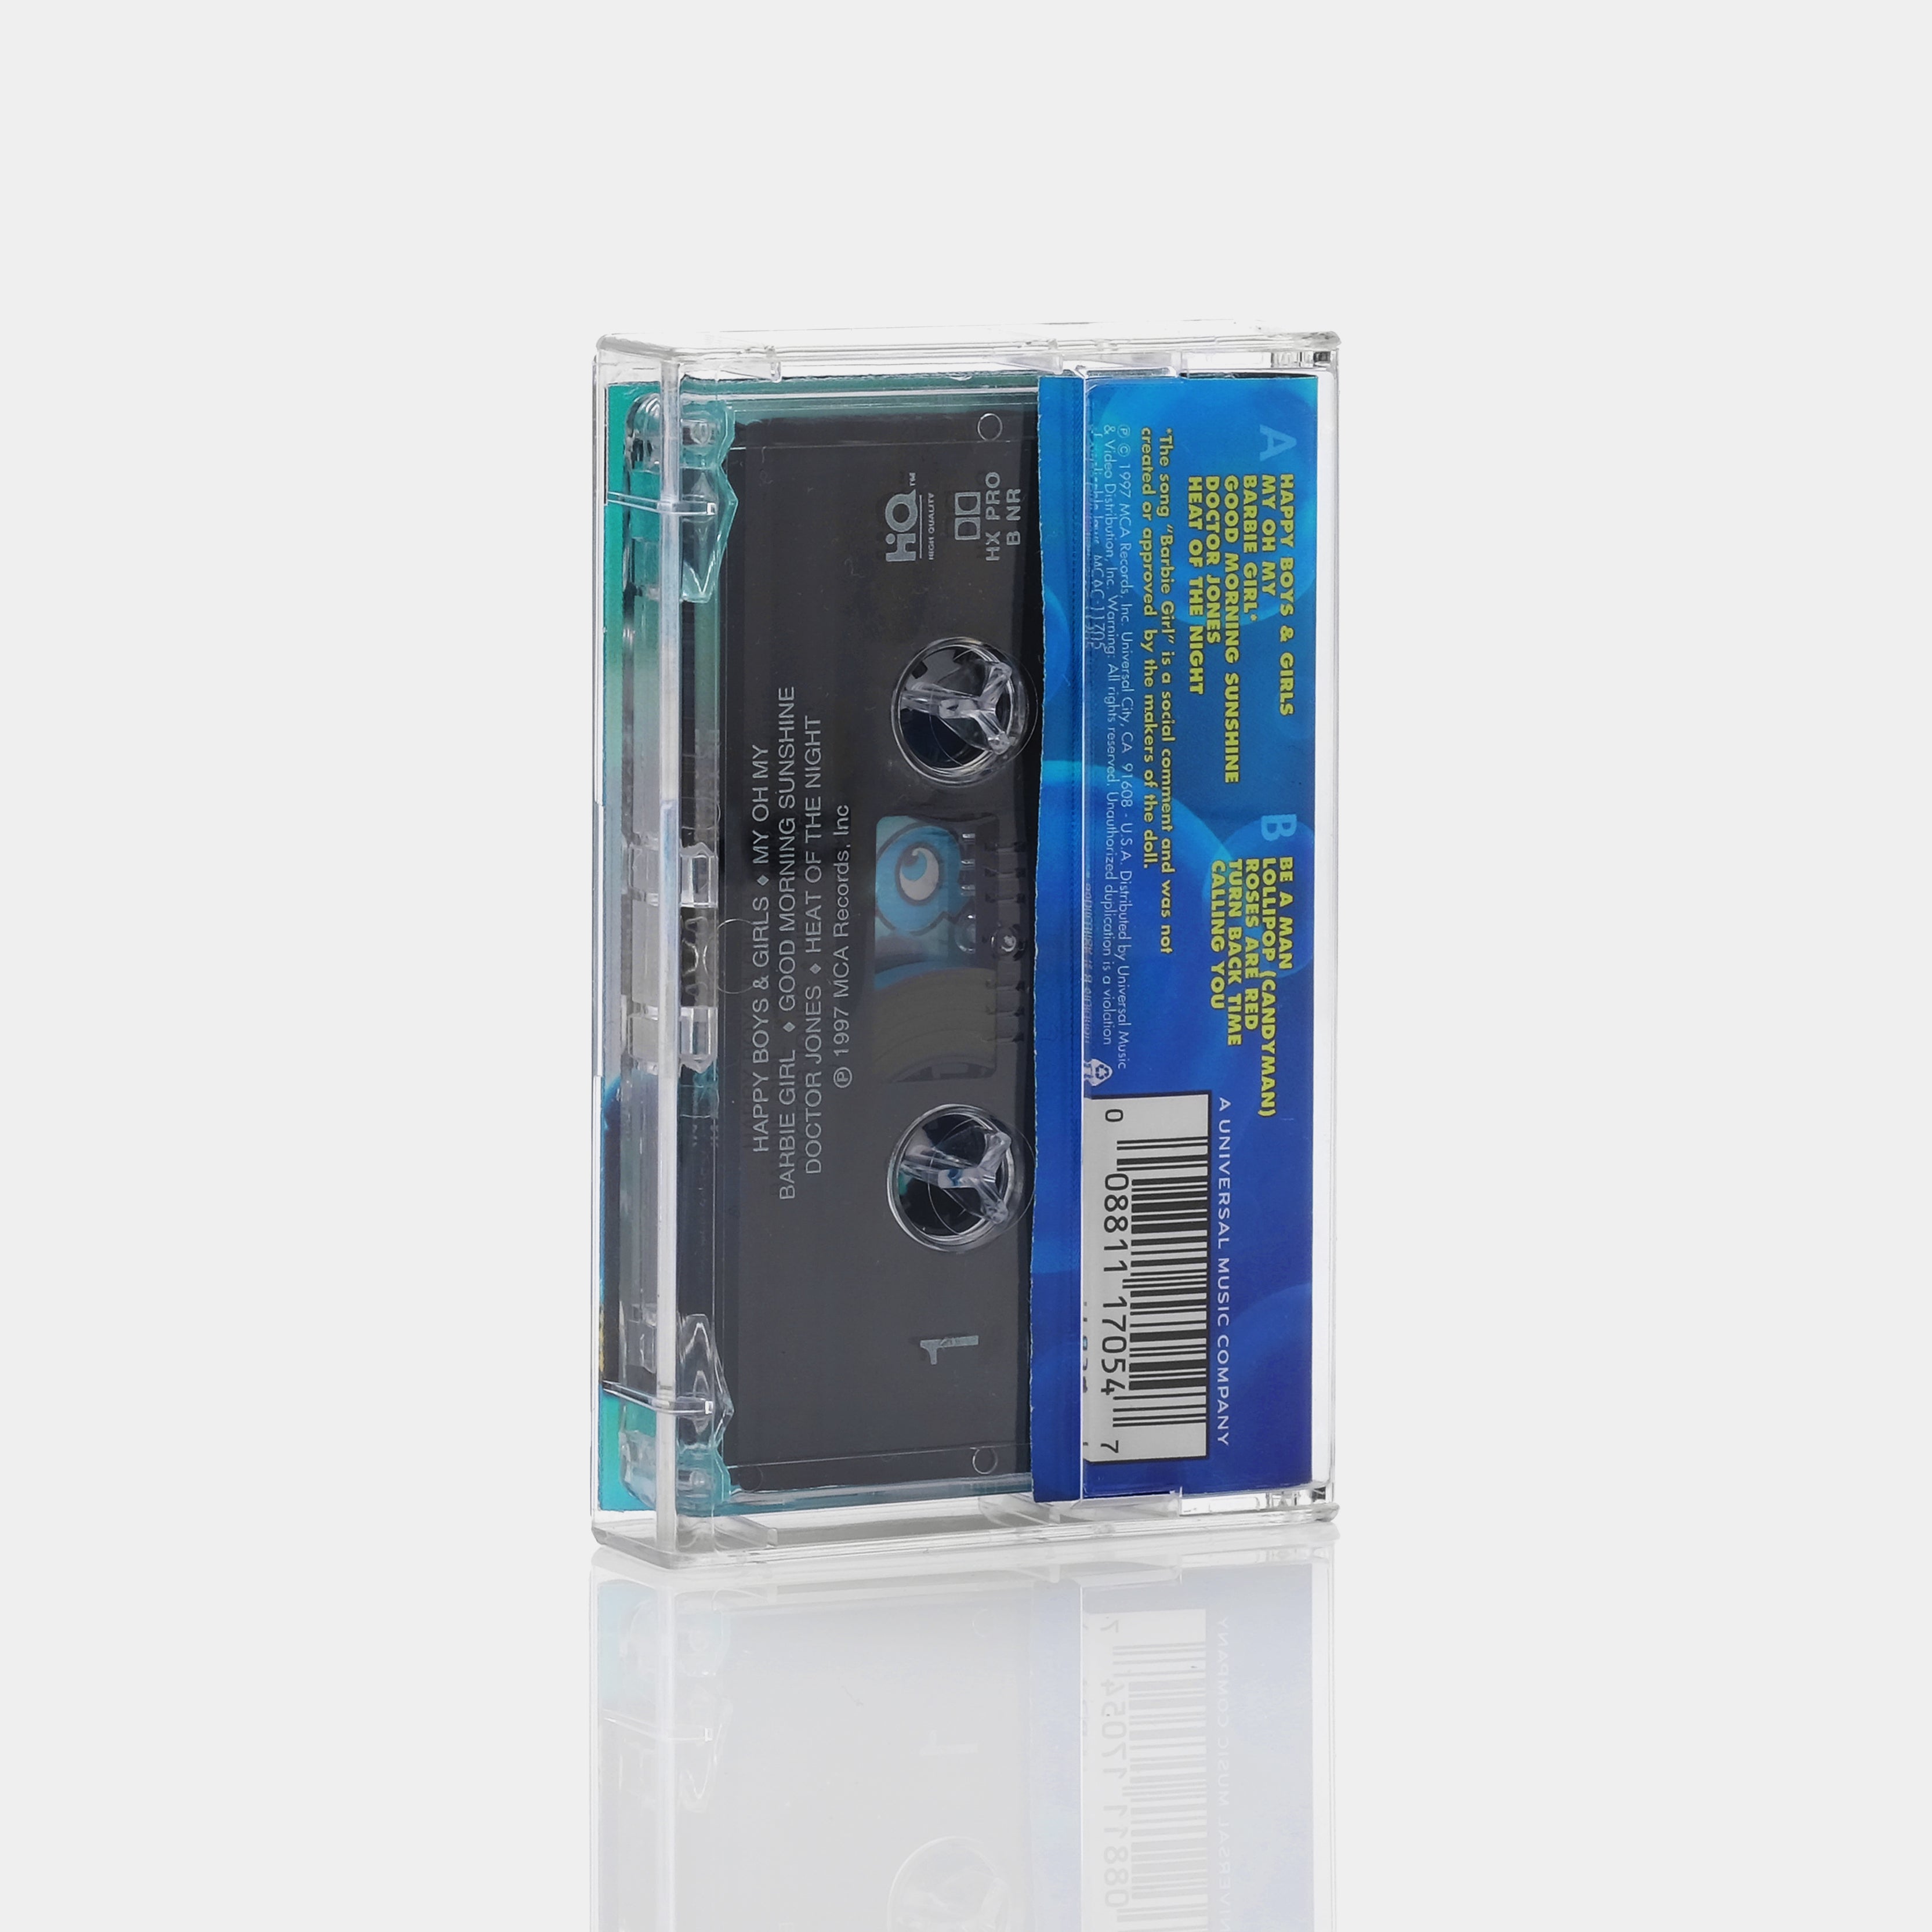 Aqua - Aquarium Cassette Tape